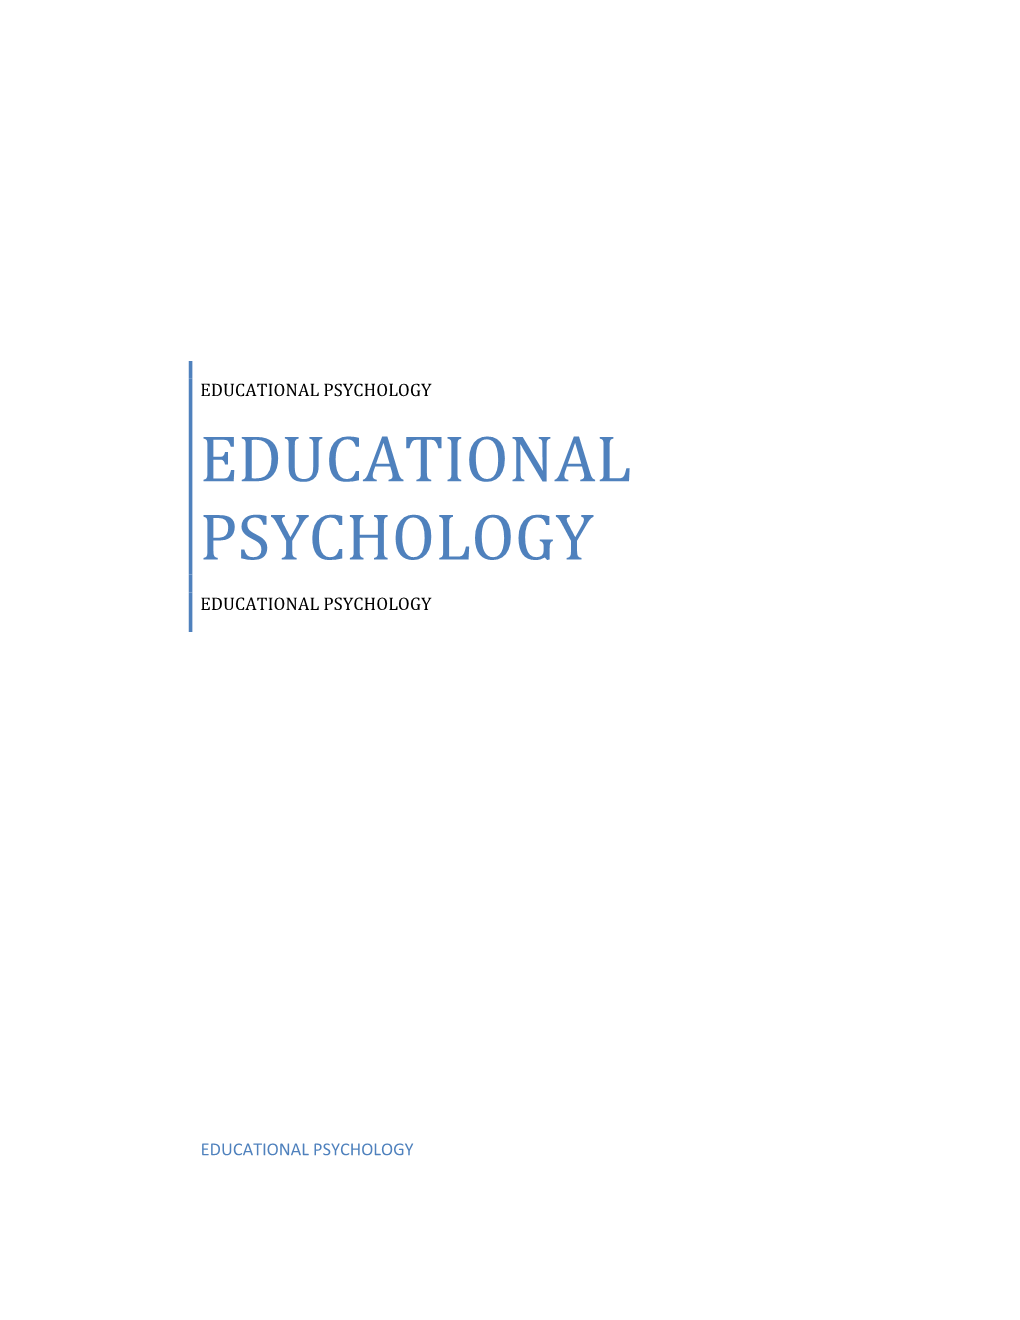 Educational Psychology Educational Psychology